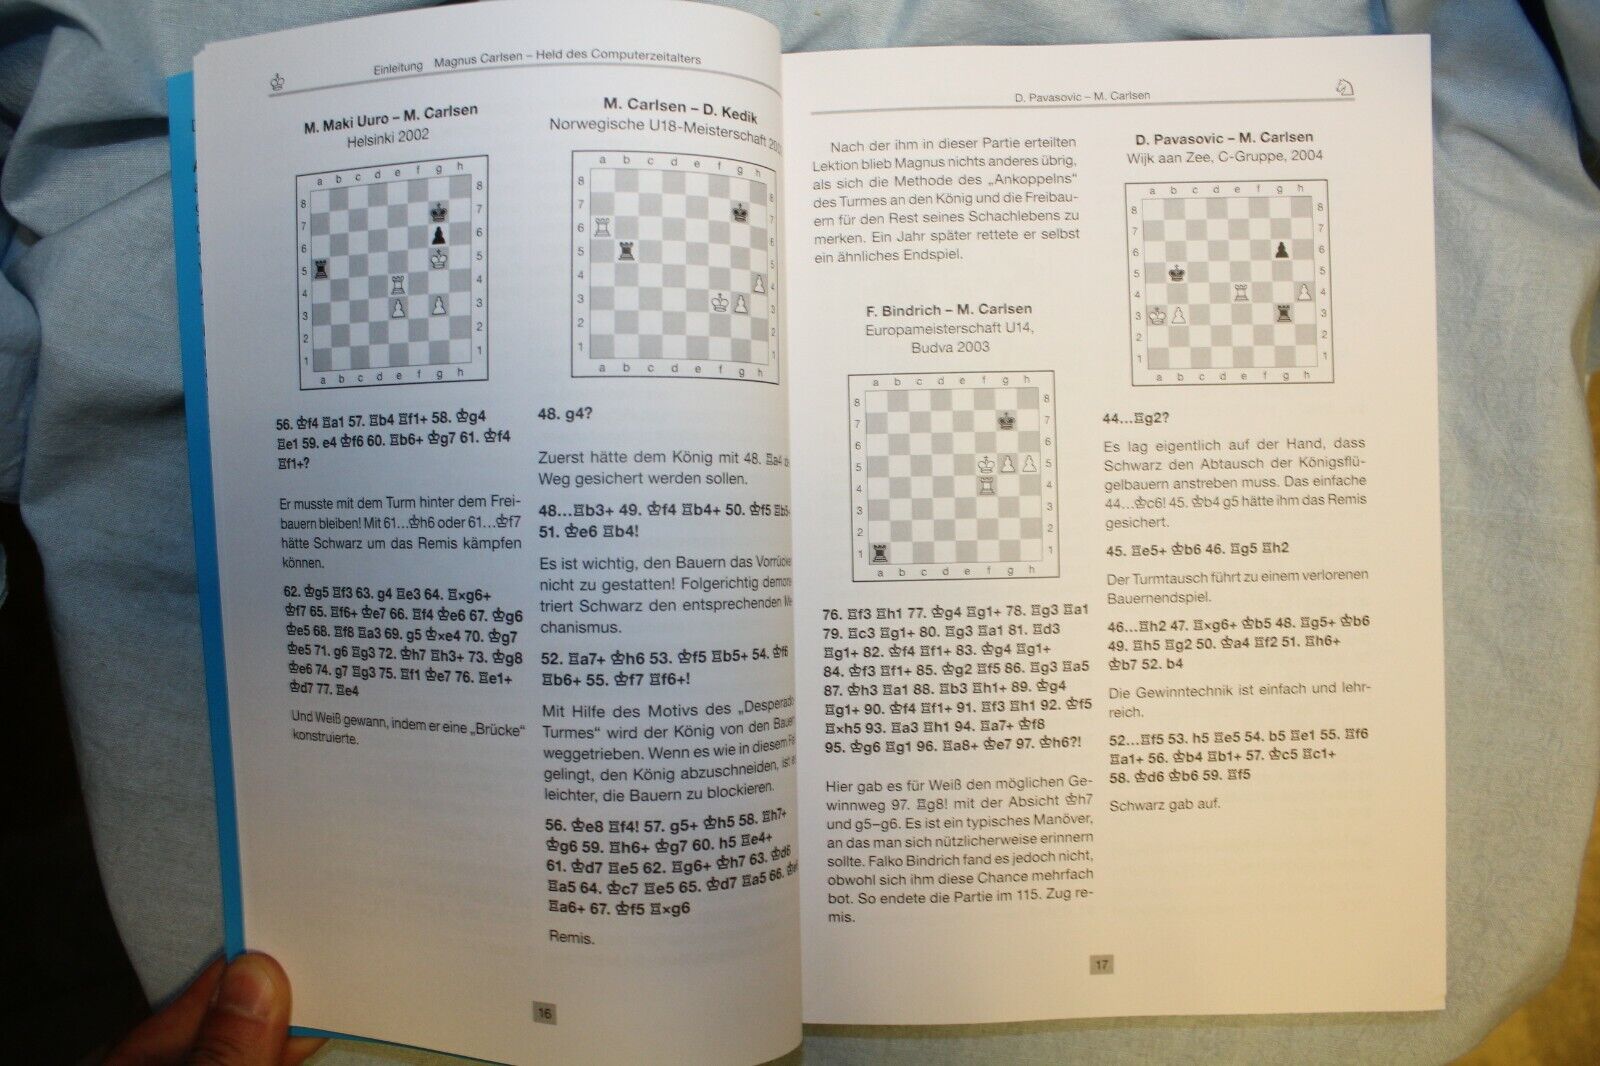 11313.German Chess Book: Michaltschischin: Kämpfen und Siegen mit Magnus Carlsen